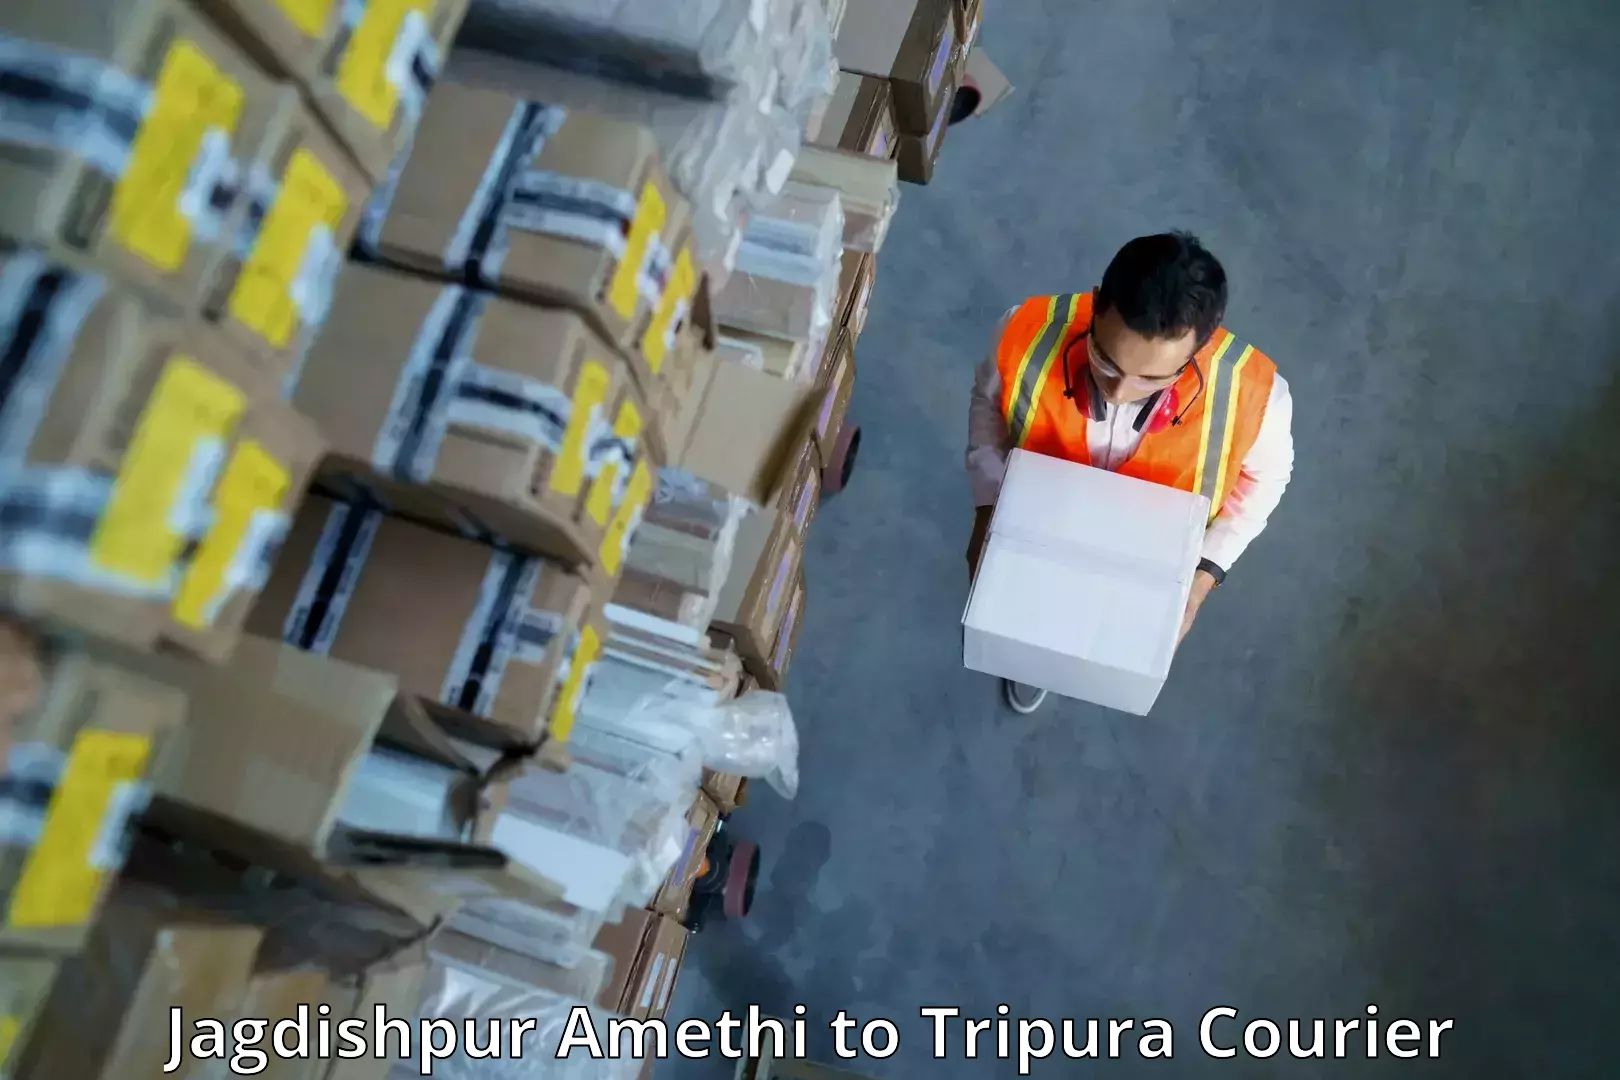 Subscription-based courier Jagdishpur Amethi to Ambassa